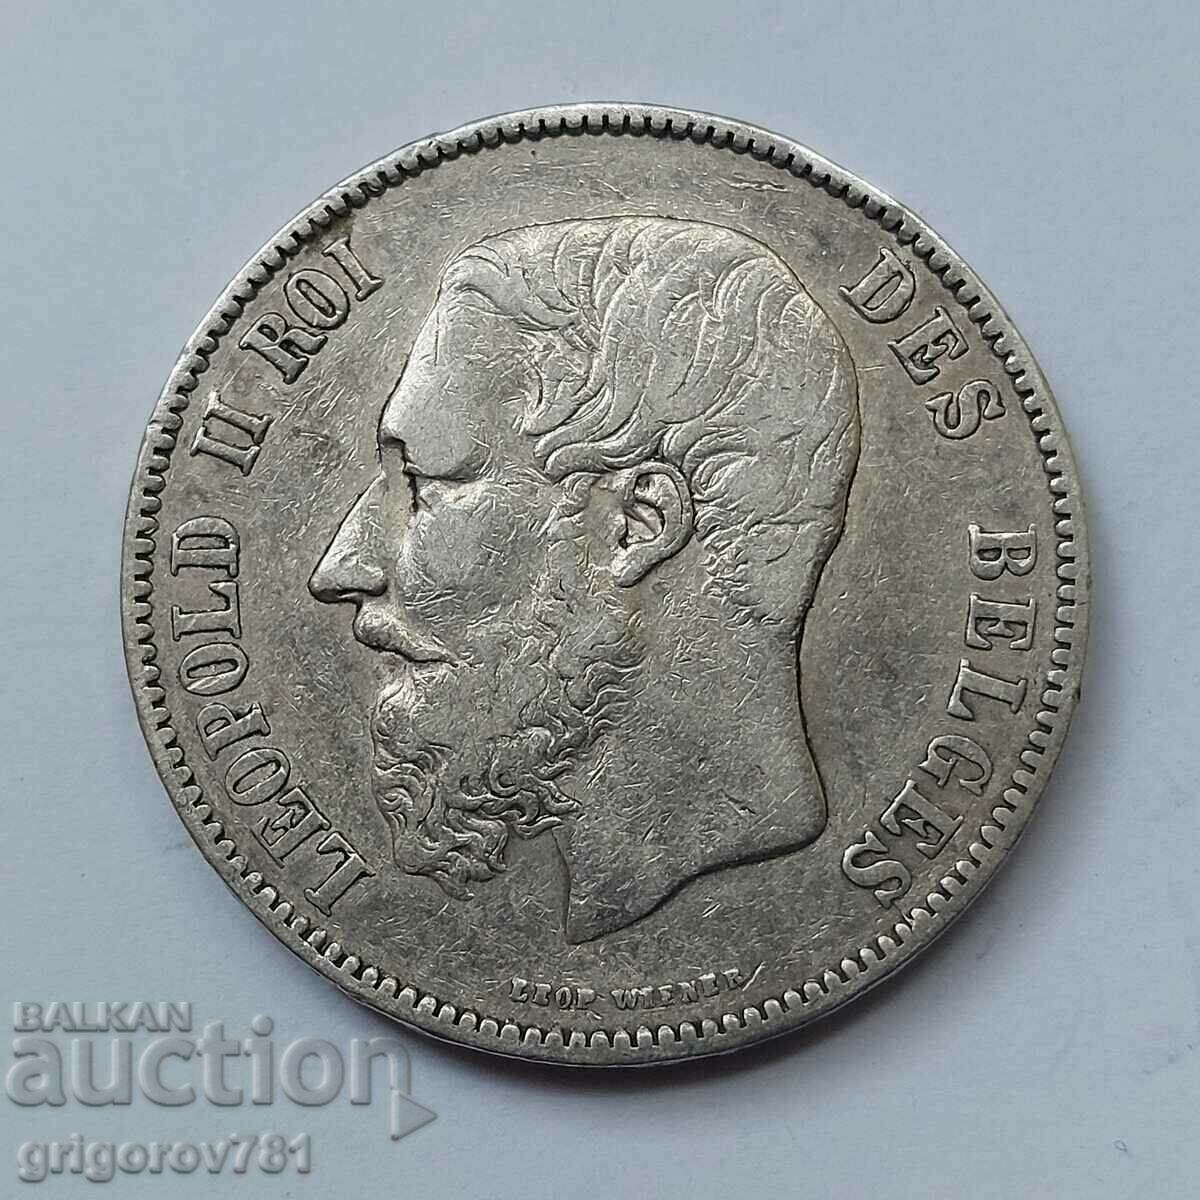 5 Francs Silver Belgium 1870 - Silver Coin #99